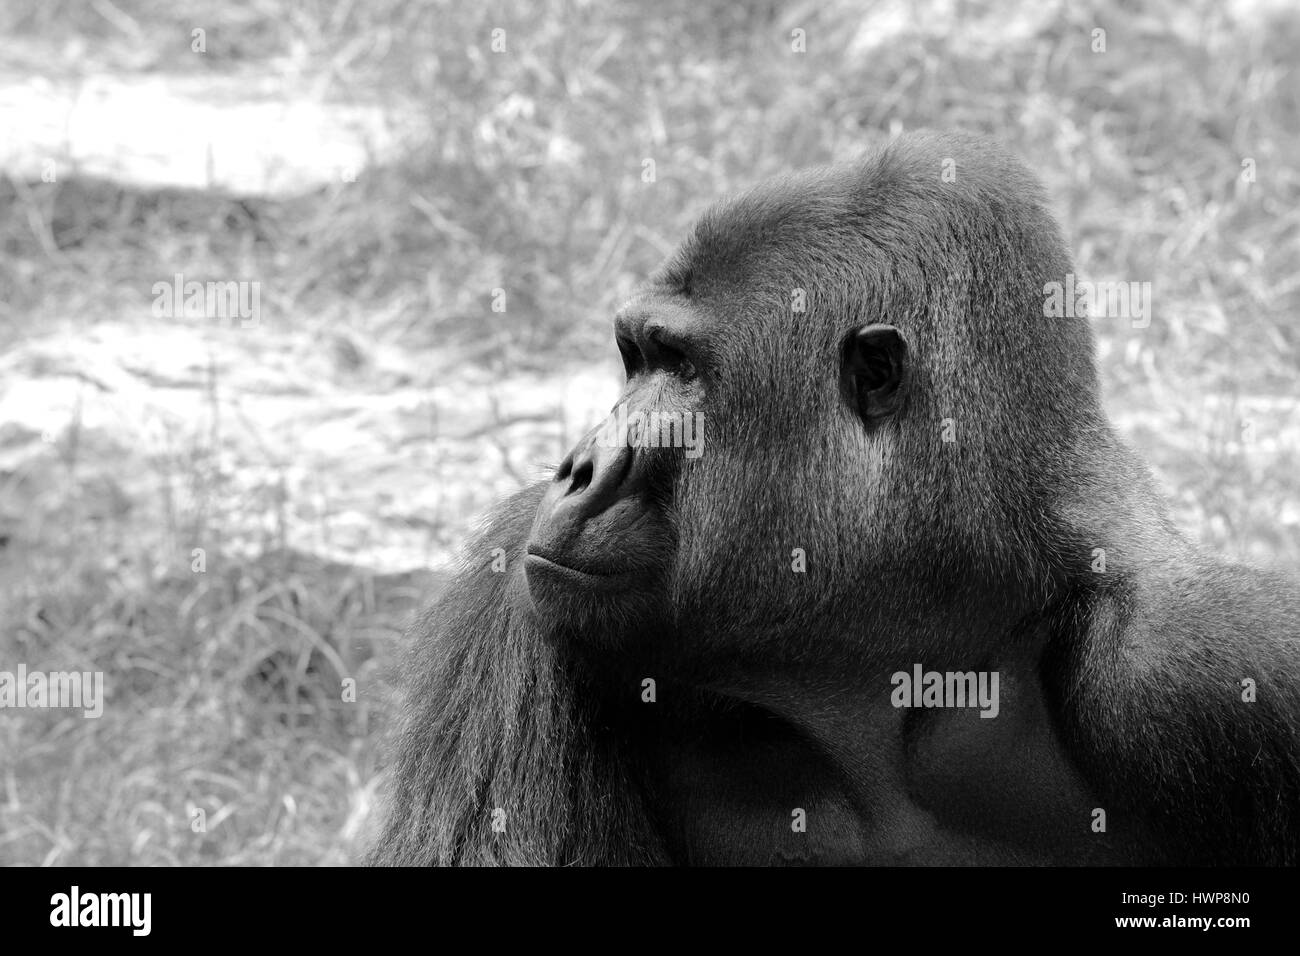 Le plus gros gorilles genre existantes des primates par taille, qui habitent les forêts d'Afrique centrale. Banque D'Images